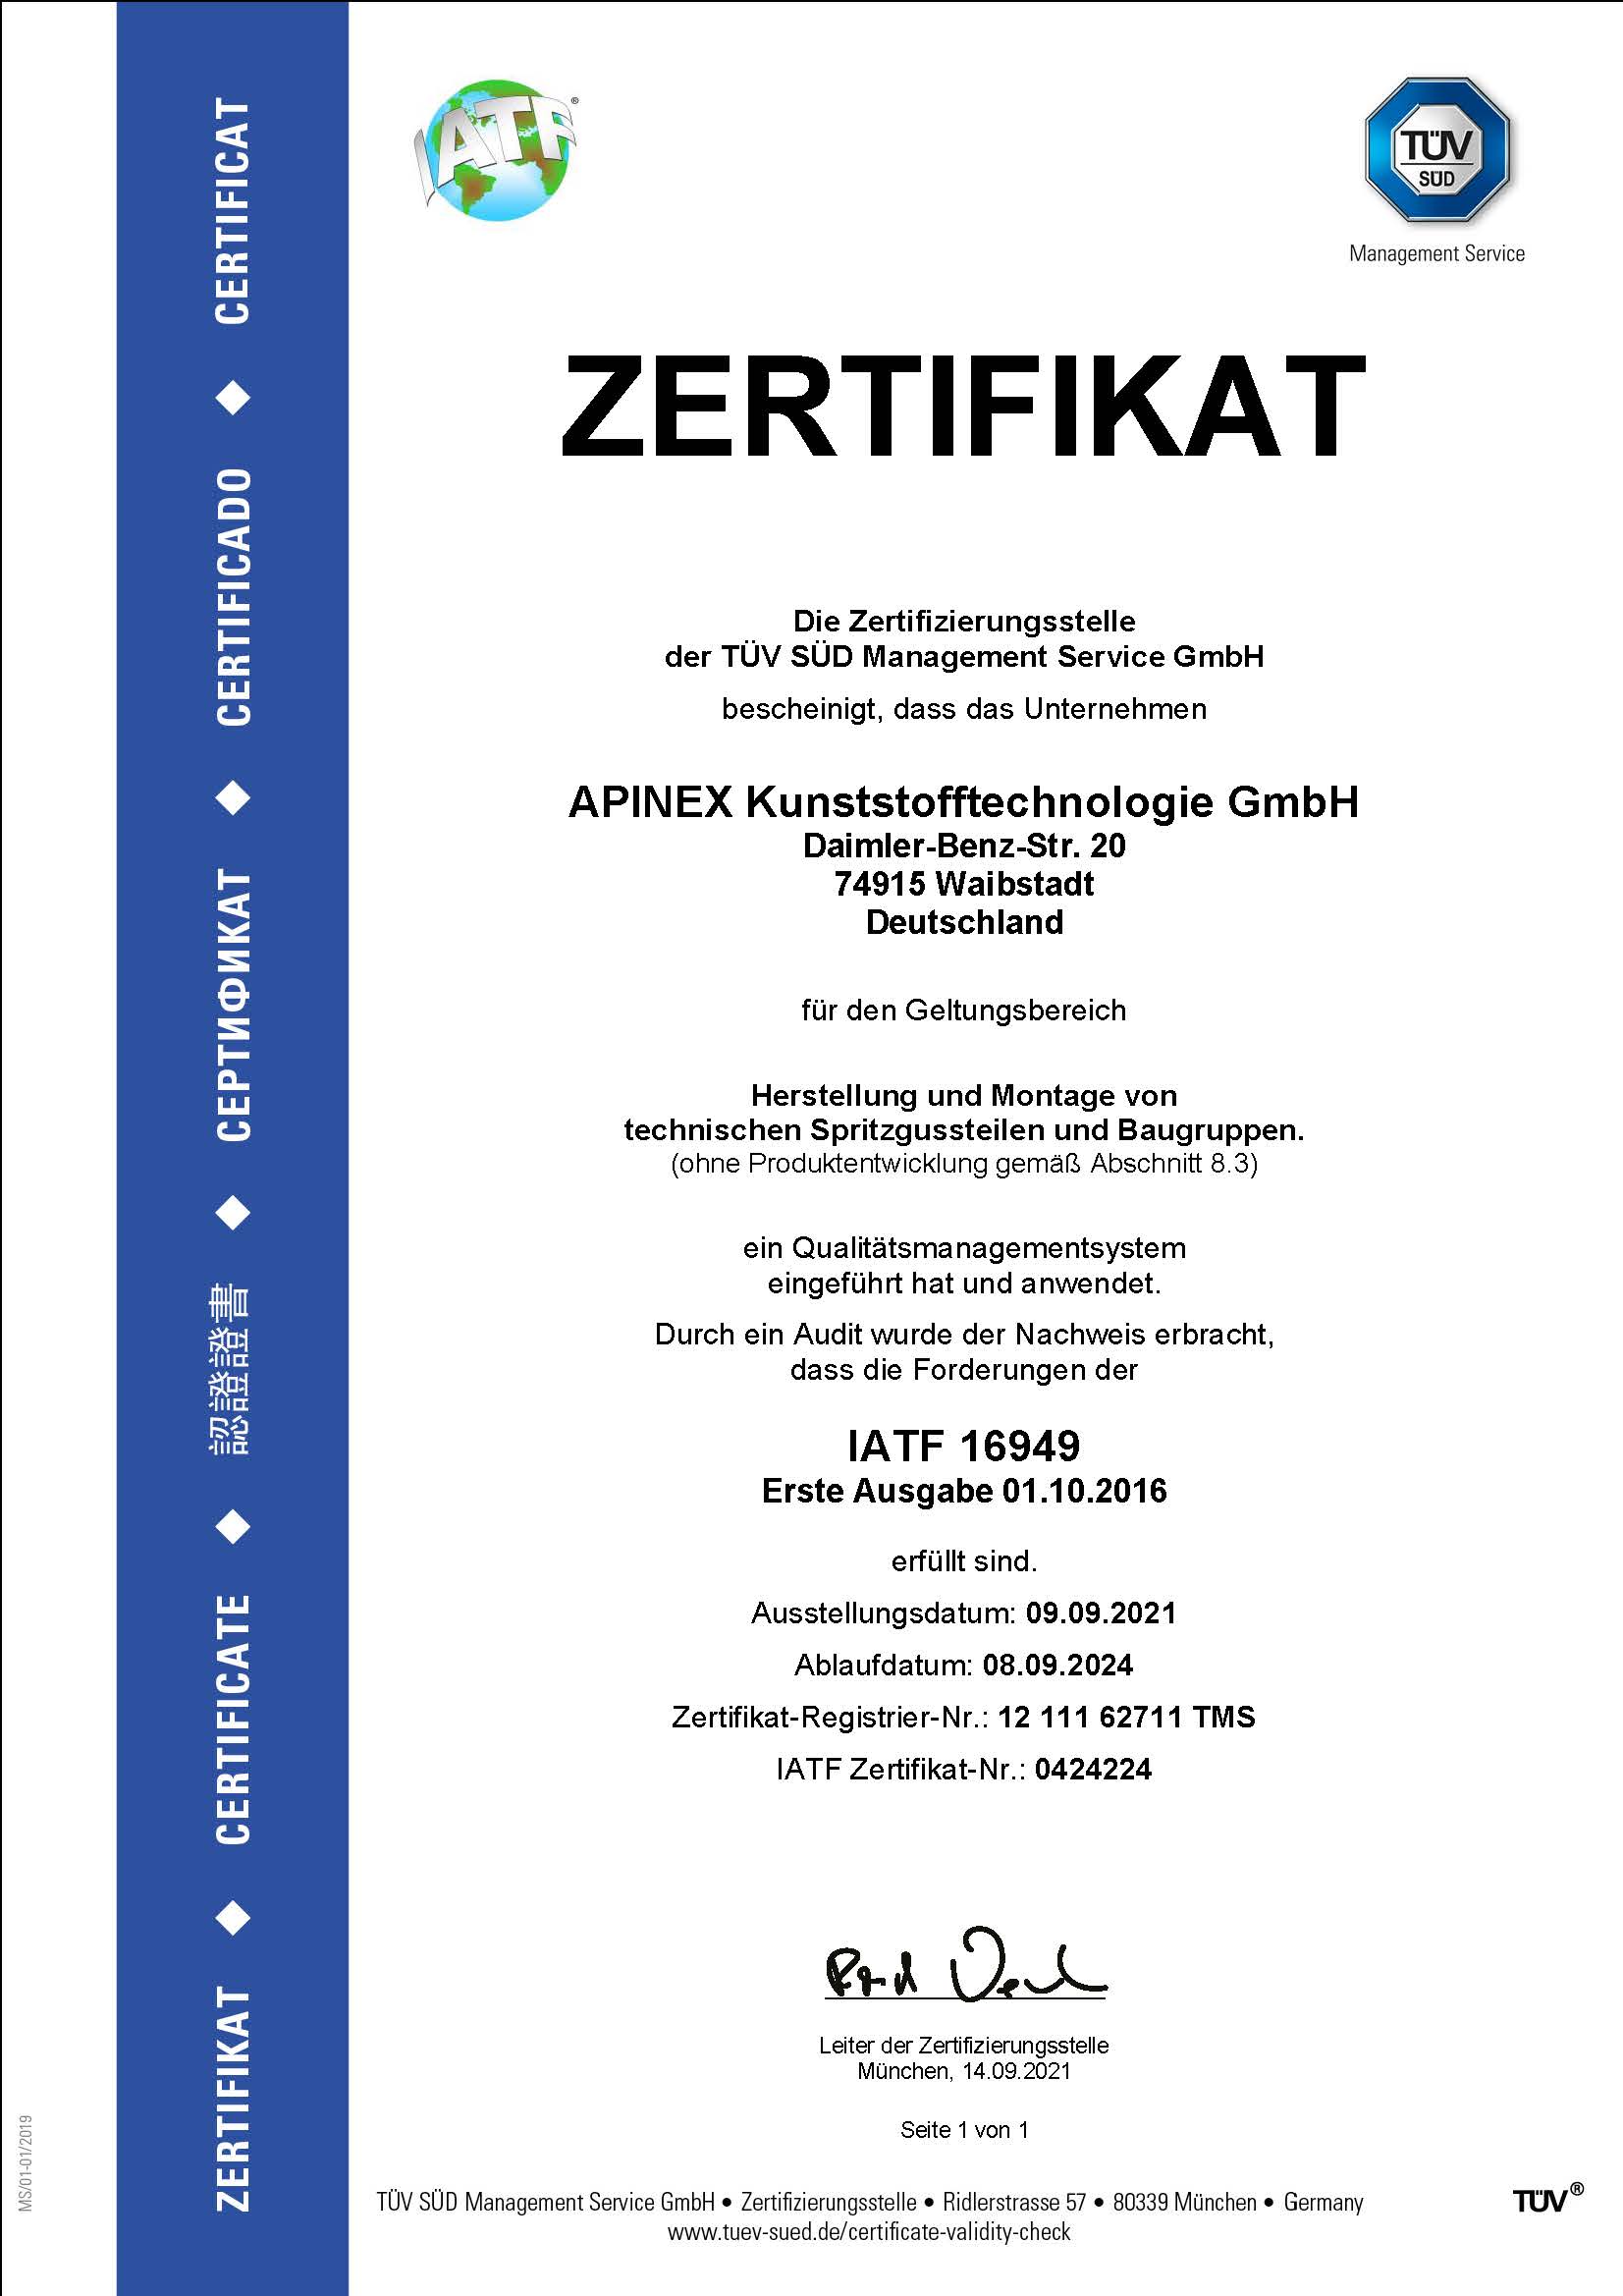 Apinex GmbH Zertifikat ISO/TS 16949:2009